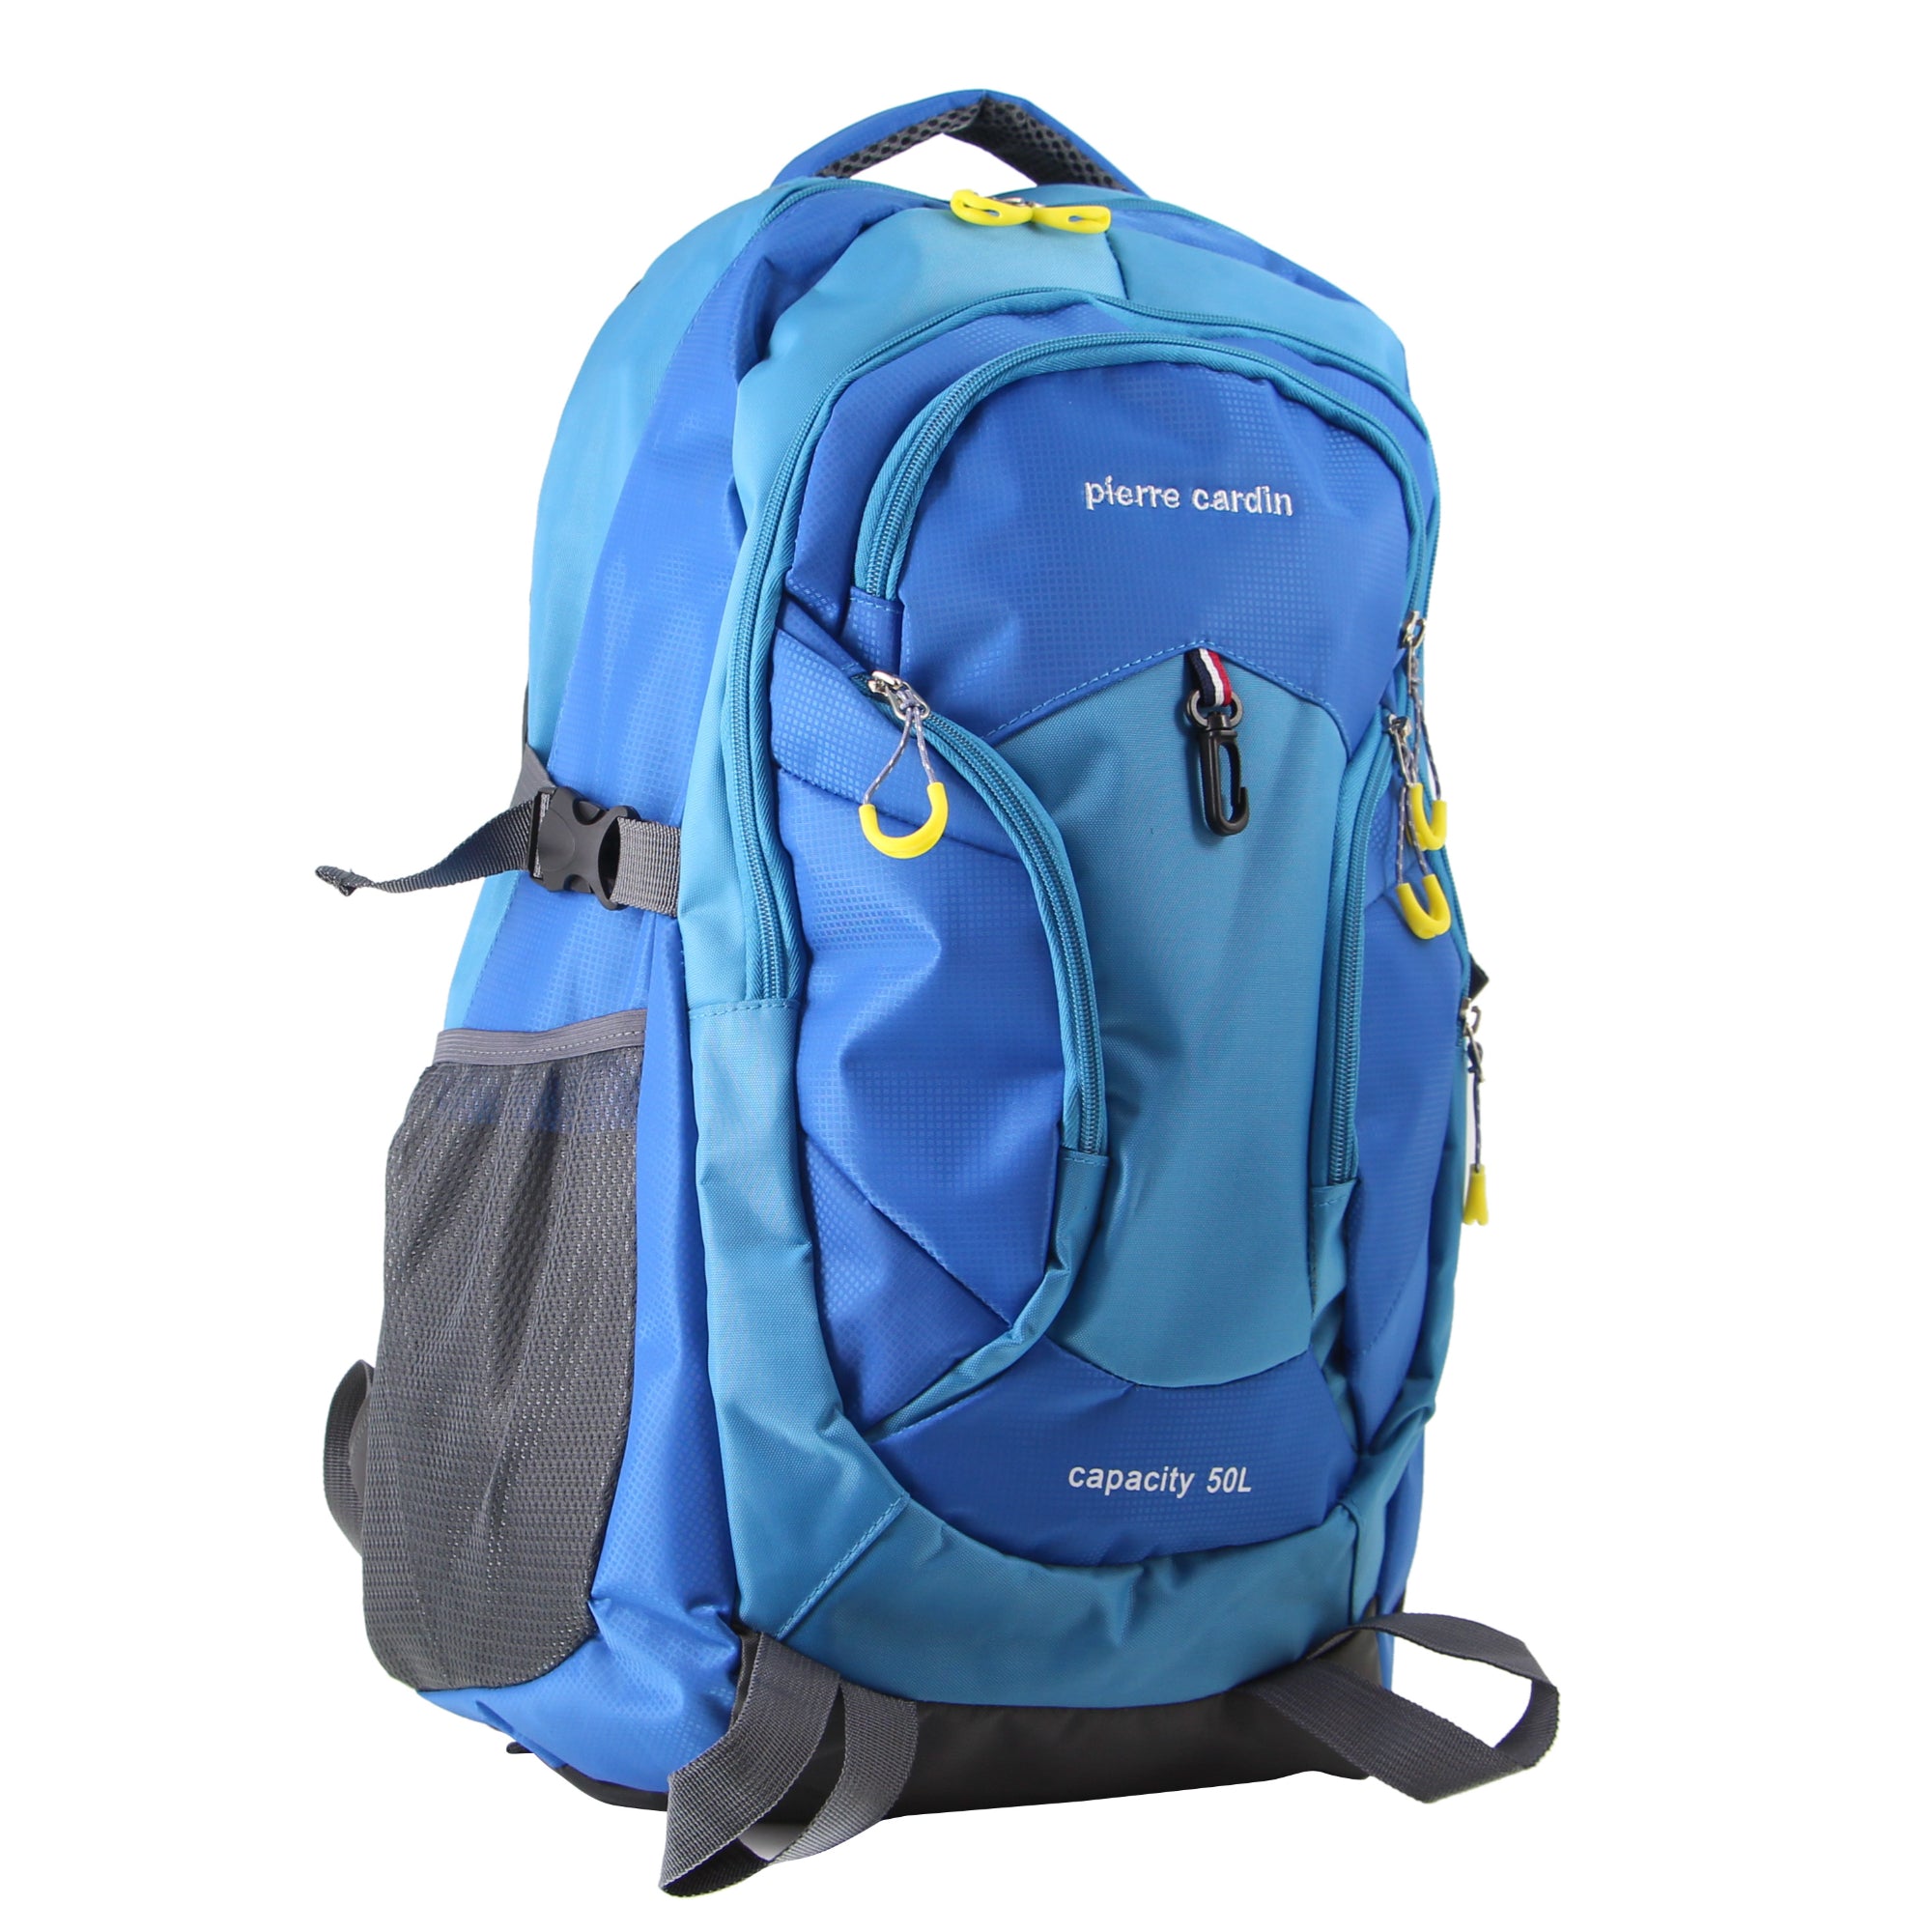 Pierre Cardin Nylon Travel & Sport Backpack in Blue